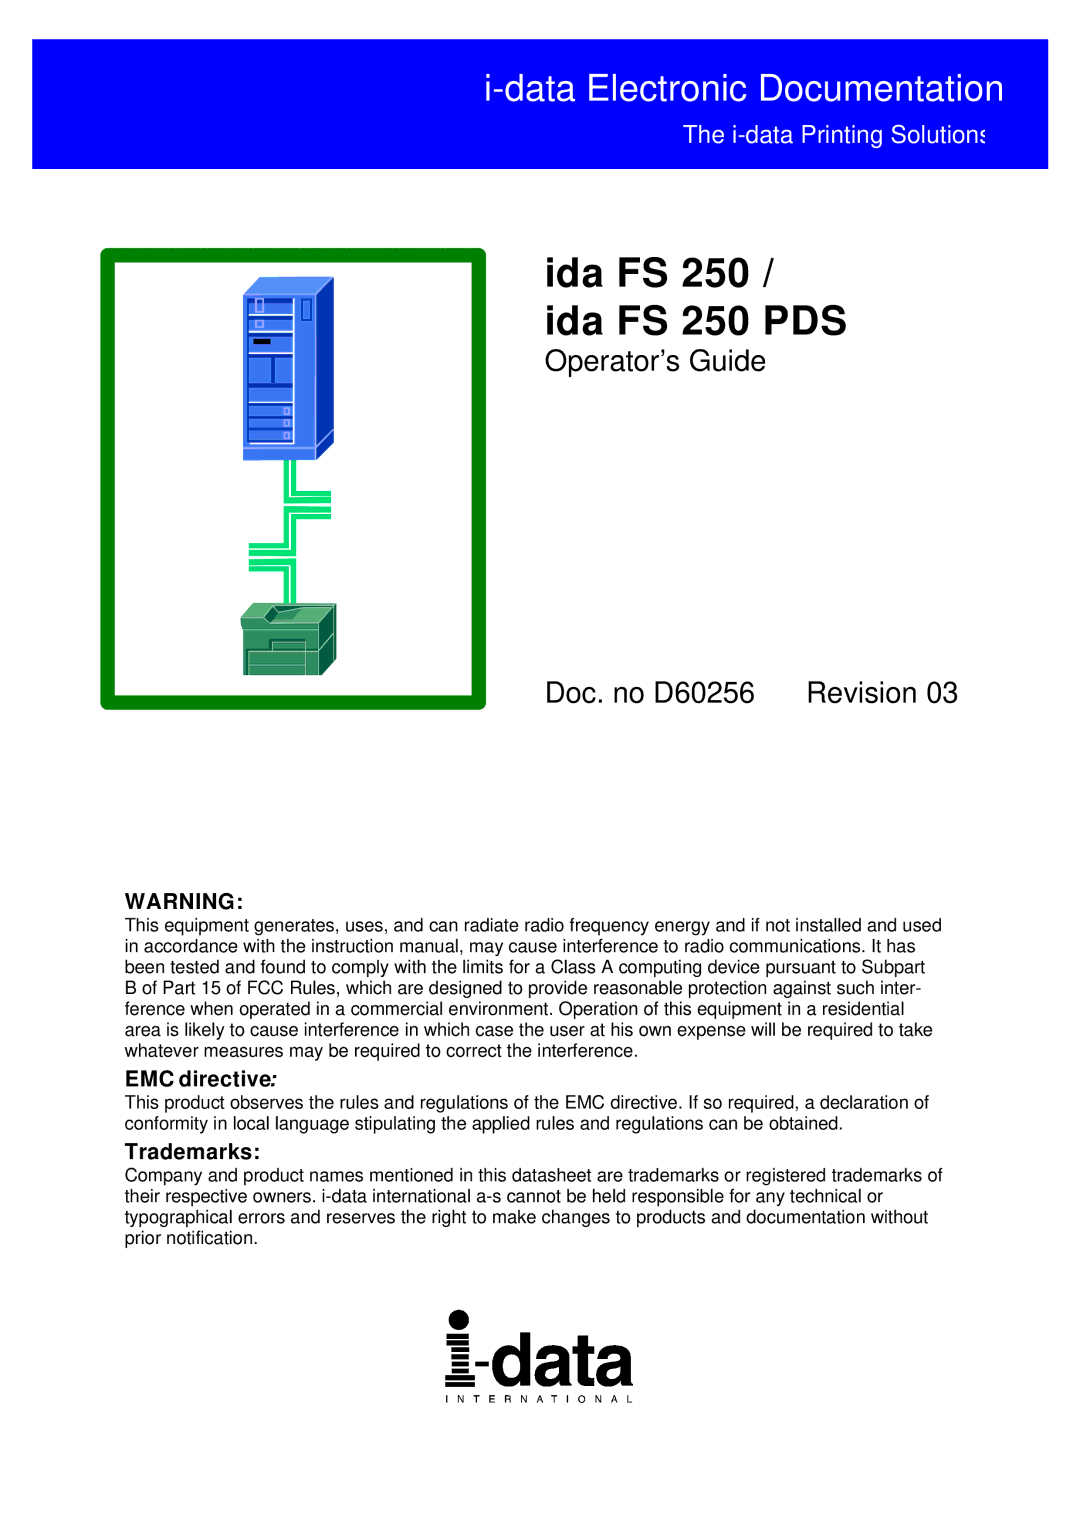 I-Data FS 250 PDS, i-data Electronic Documentation ida instruction manual EMC directive, Trademarks 